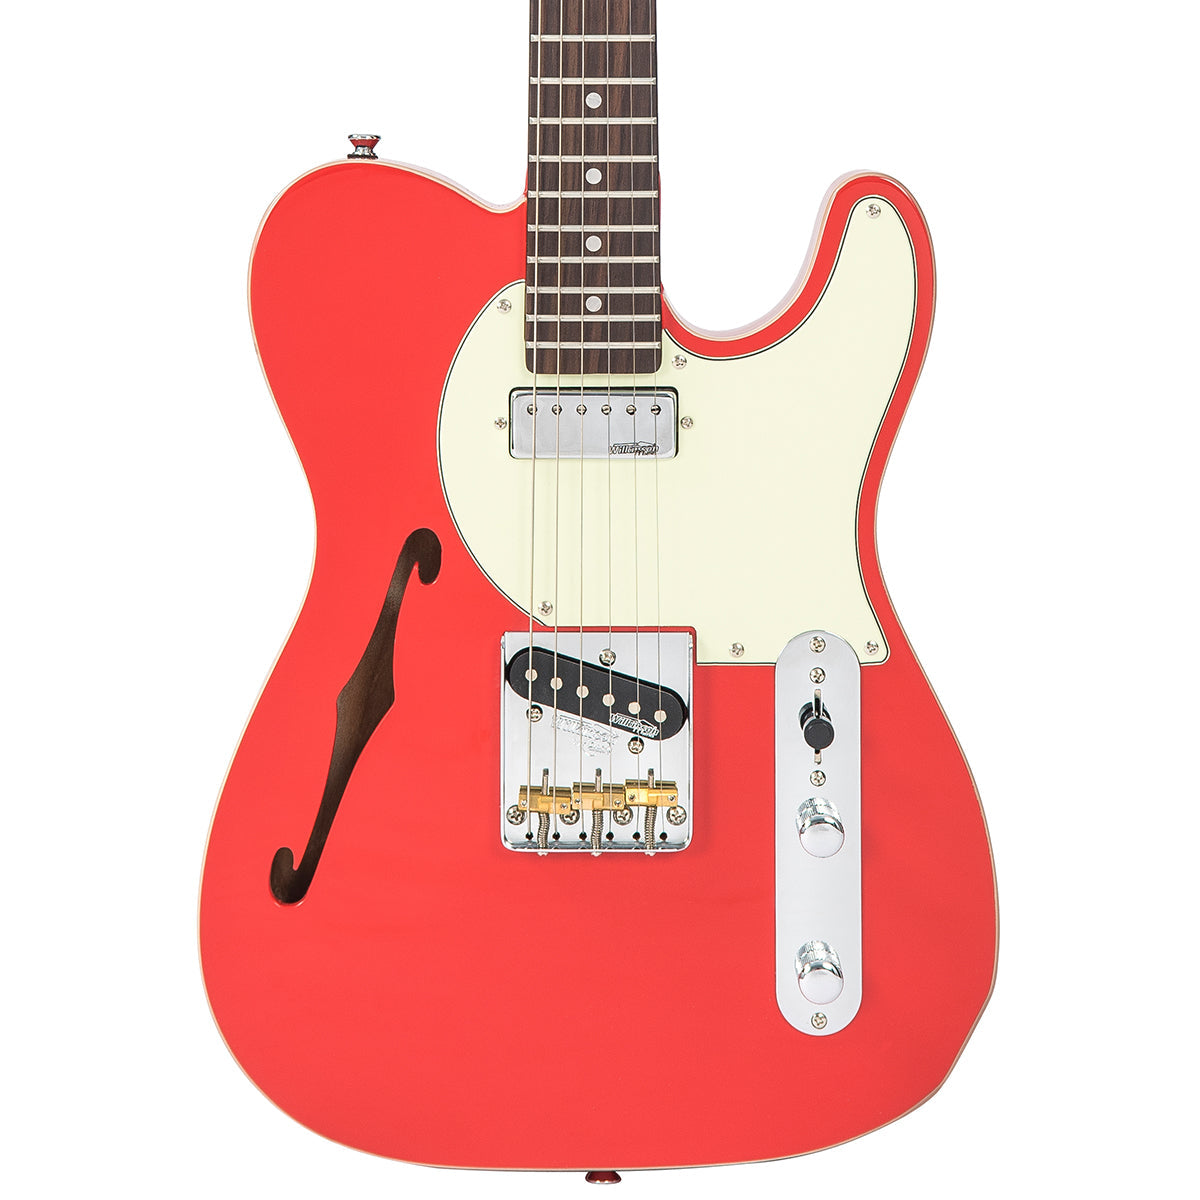 Vintage V72 ReIssued Electric Guitar ~ Firenza Red, Electric Guitar for sale at Richards Guitars.